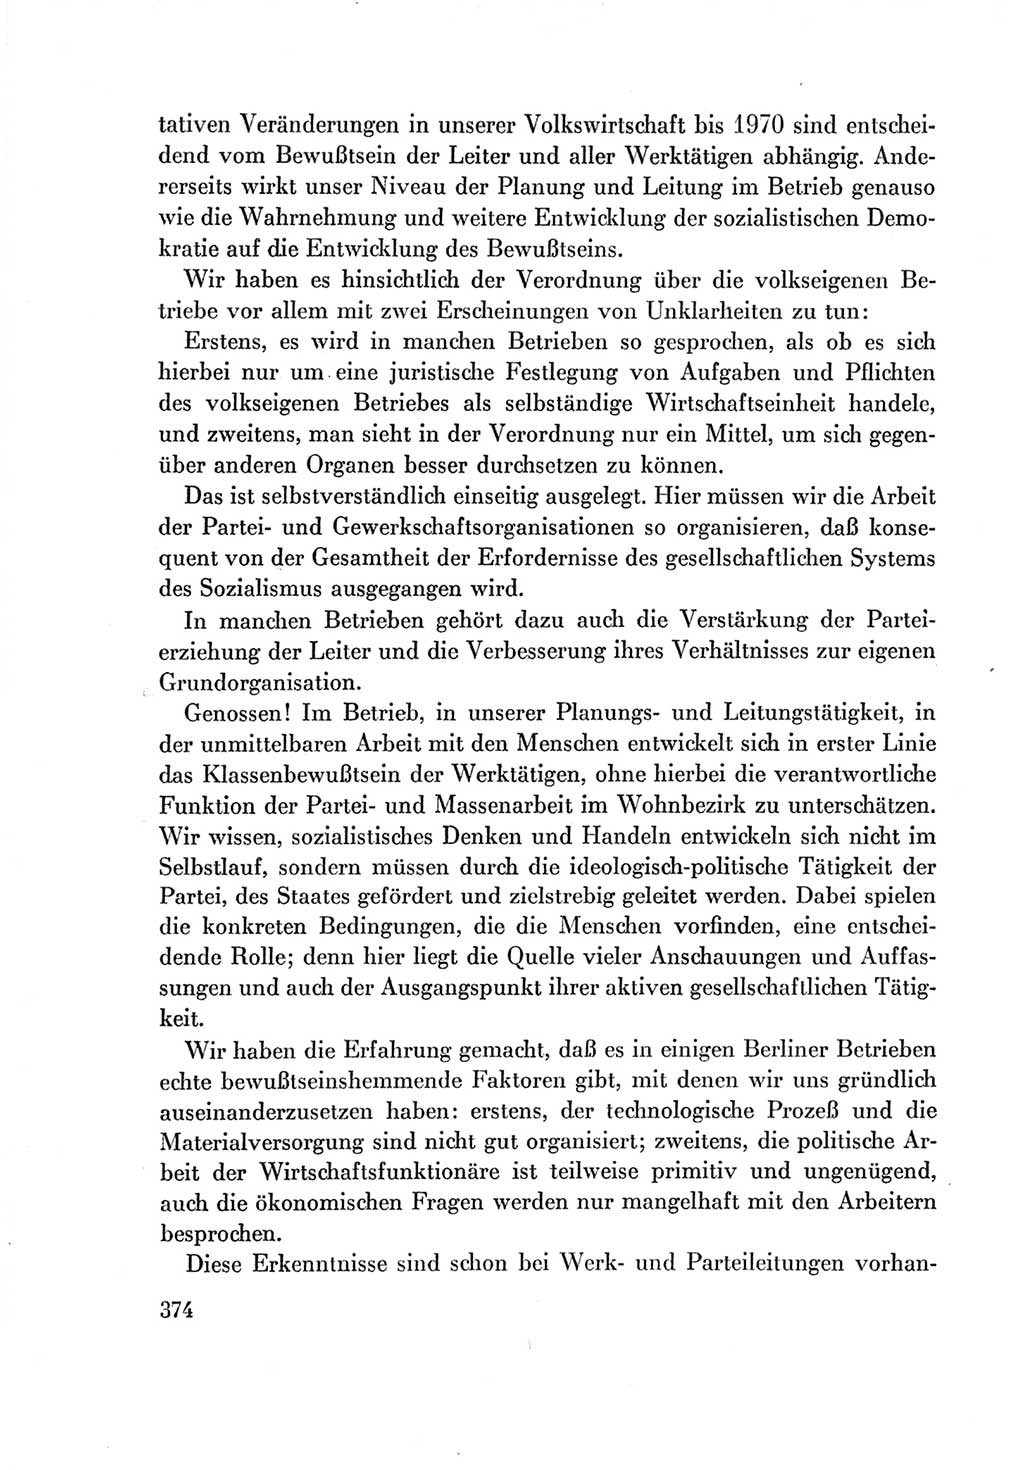 Protokoll der Verhandlungen des Ⅶ. Parteitages der Sozialistischen Einheitspartei Deutschlands (SED) [Deutsche Demokratische Republik (DDR)] 1967, Band Ⅰ, Seite 374 (Prot. Verh. Ⅶ. PT SED DDR 1967, Bd. Ⅰ, S. 374)